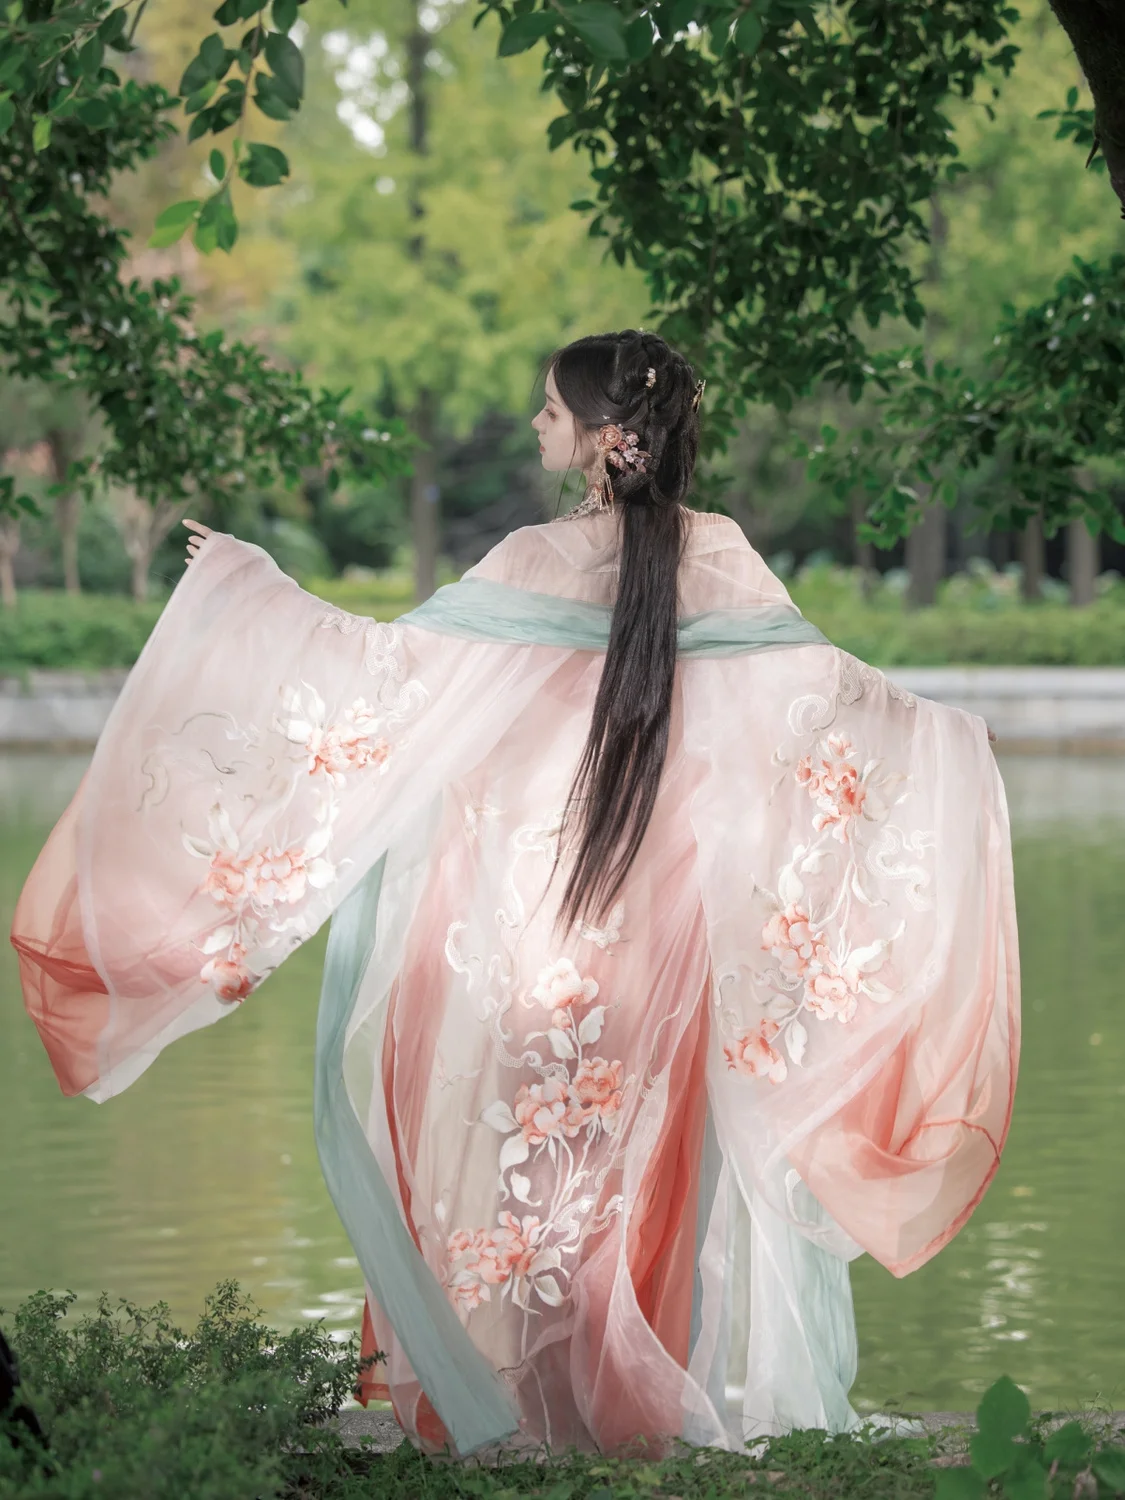 אסתטי הפייה המקורי Hanfu הנשי החזה-אורך האן אלמנטים טאנג סגנון גדול שרוול החולצה רקמה Khov חליפת חצאית - 3